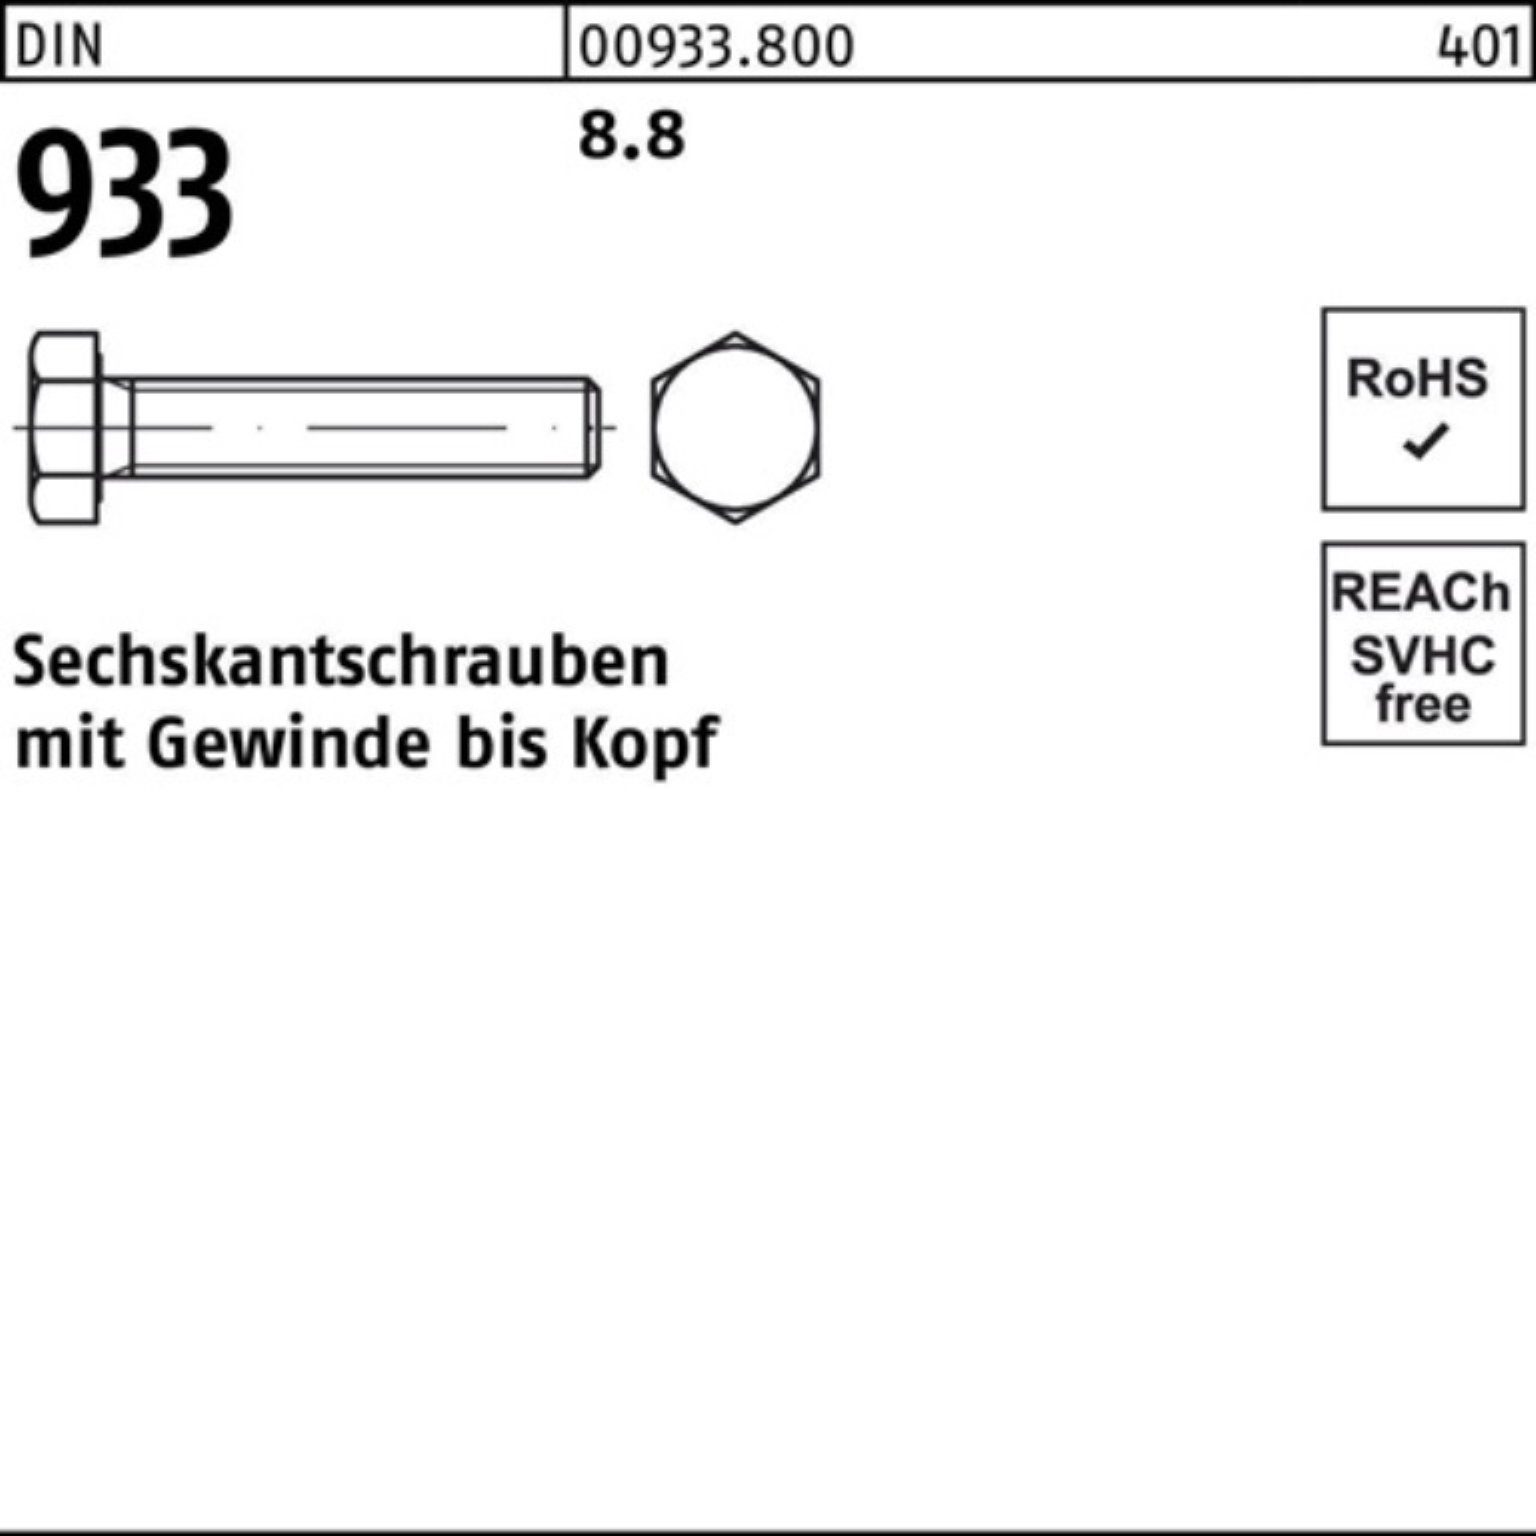 Reyher Sechskantschraube 100er DIN 25 Stück M14x DIN VG Pack 933 170 Sechskantschraube 8.8 933